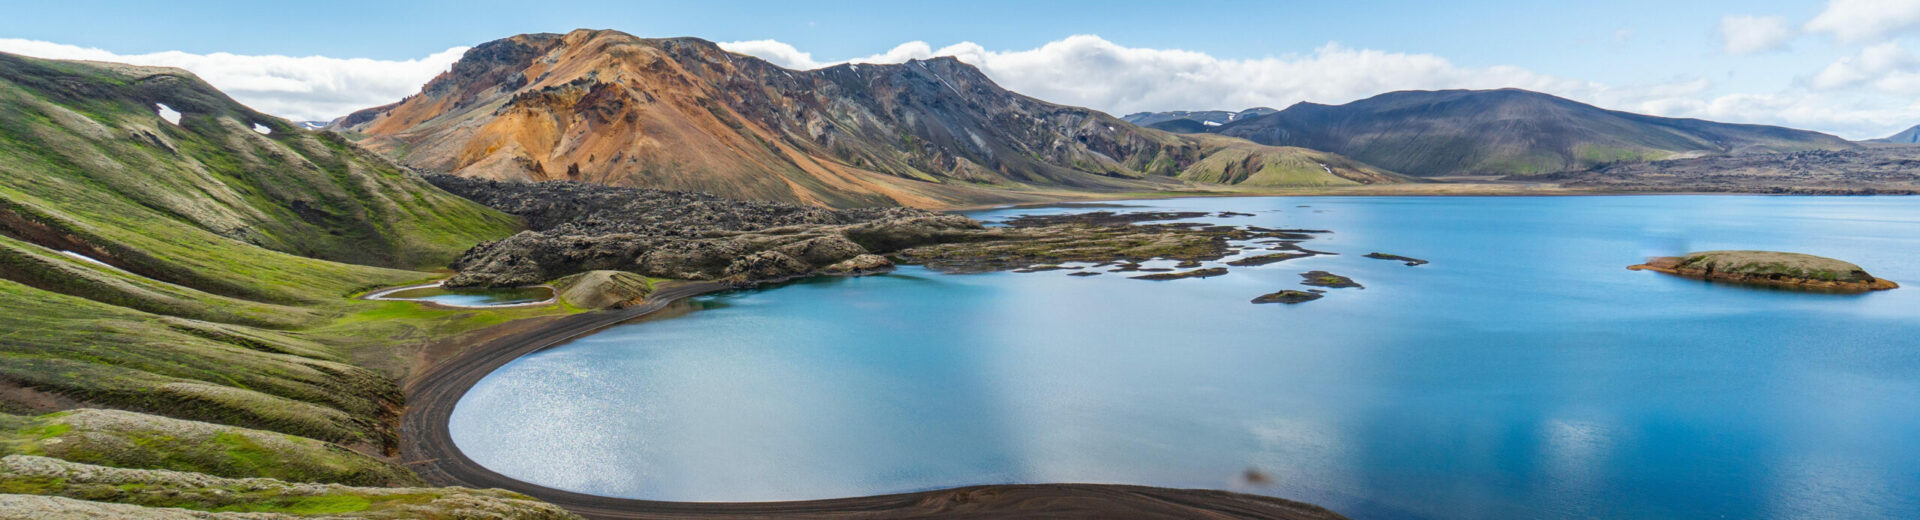 Landschaft mit Berg und See in Island